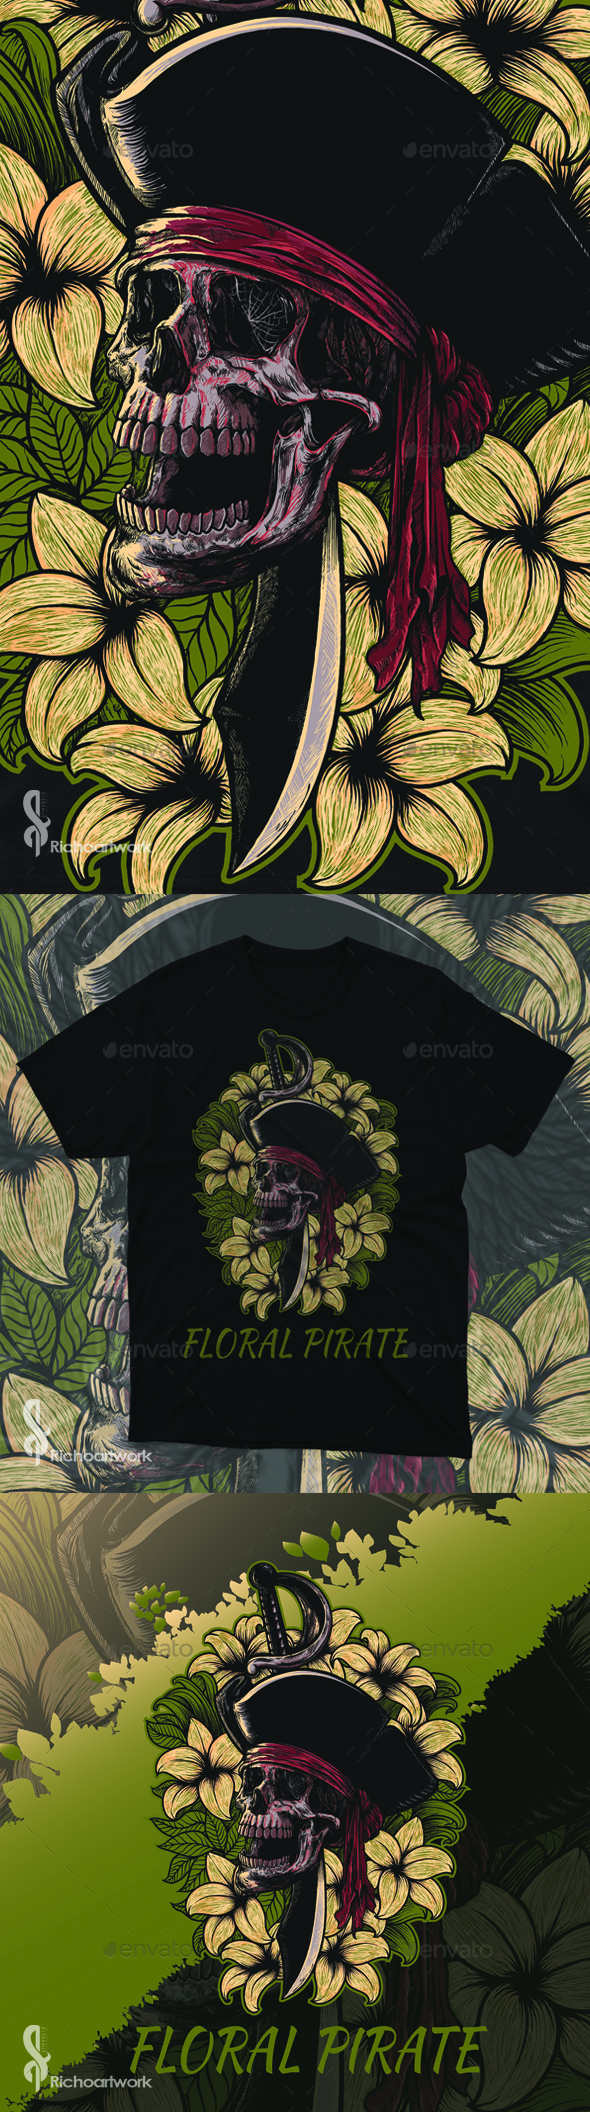 [DOWNLOAD]Floral Pirates T-Shirt Design llustration